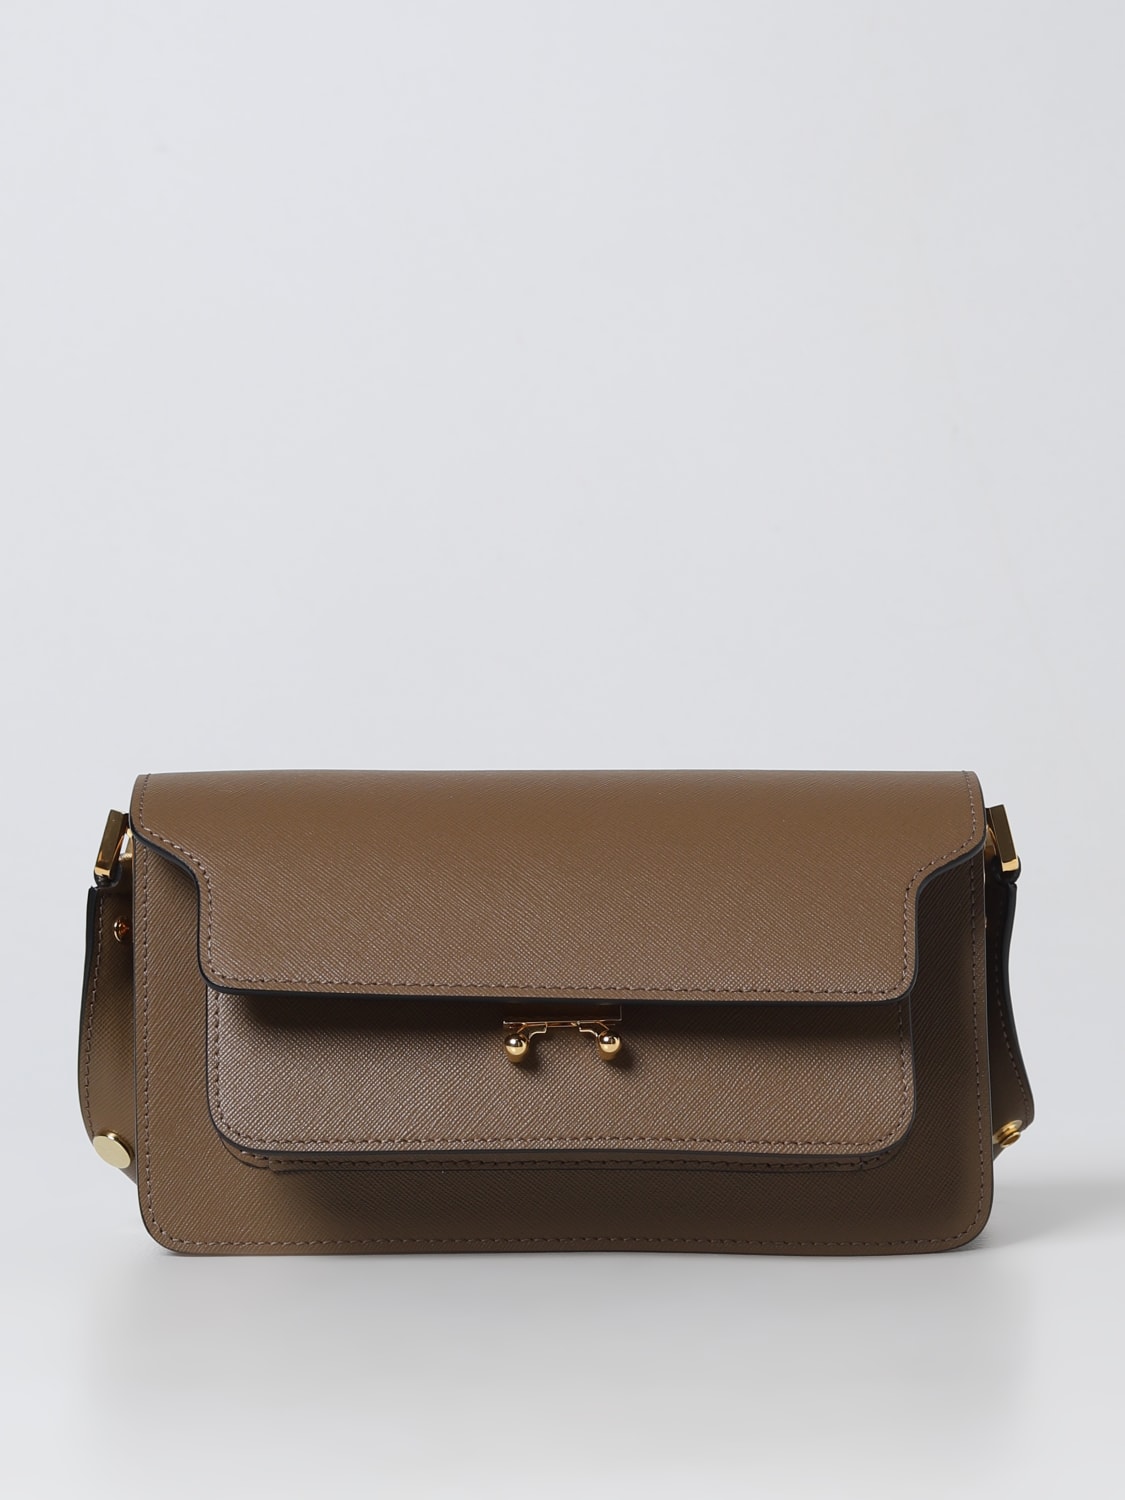 Marni Trunk Bag in Saffiano Leather